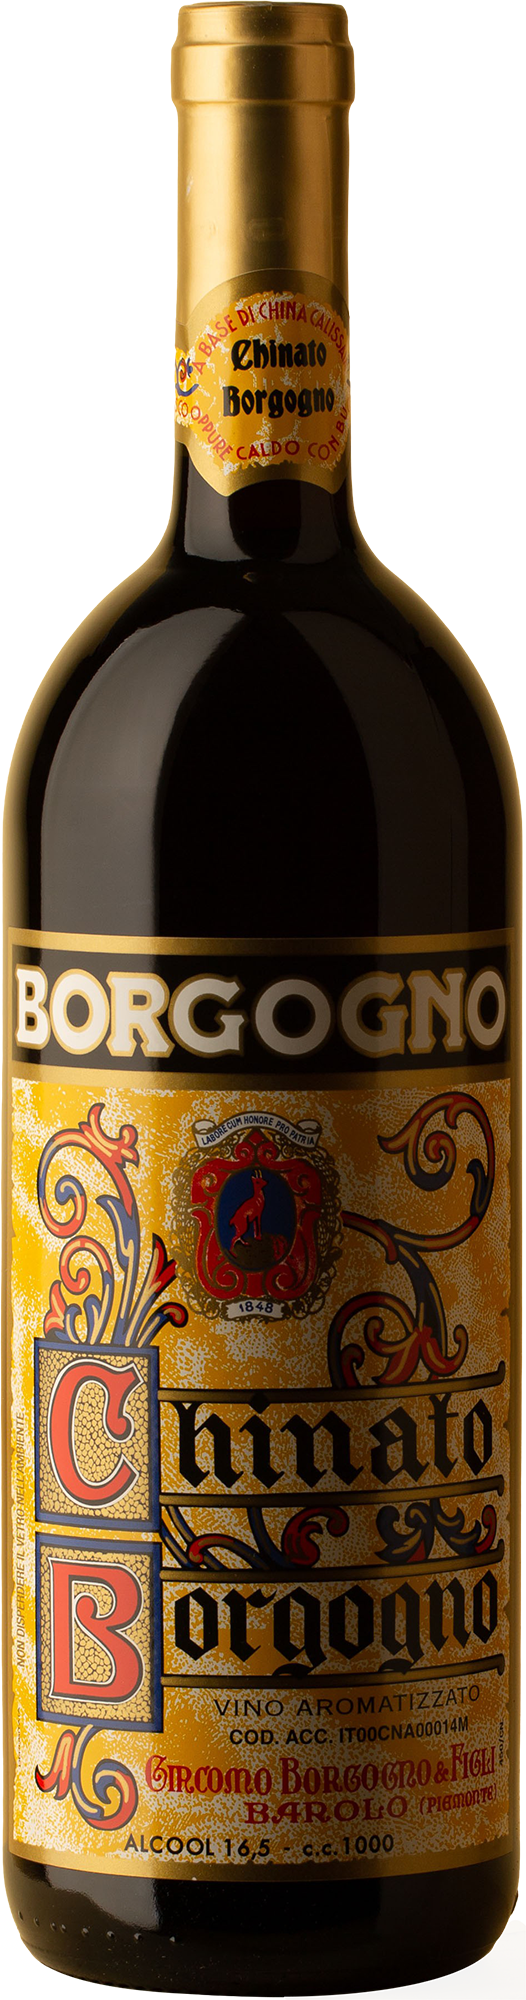 Borgogno -  Barolo 1 Litro Chinato